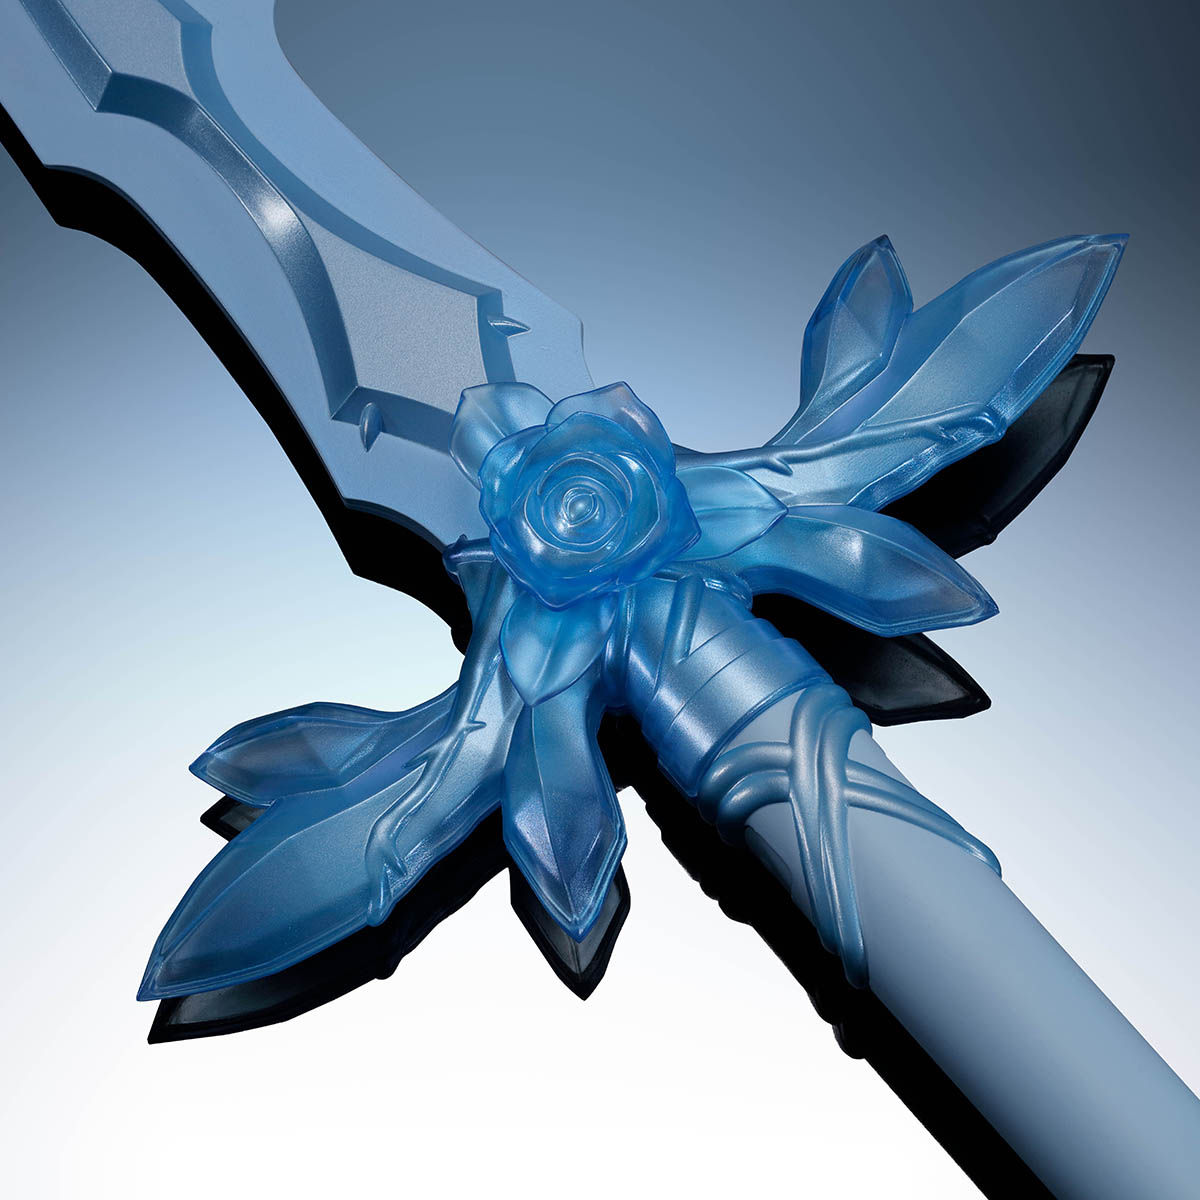 PROPLICA 青薔薇の剣 | フィギュア・プラモデル・プラキット